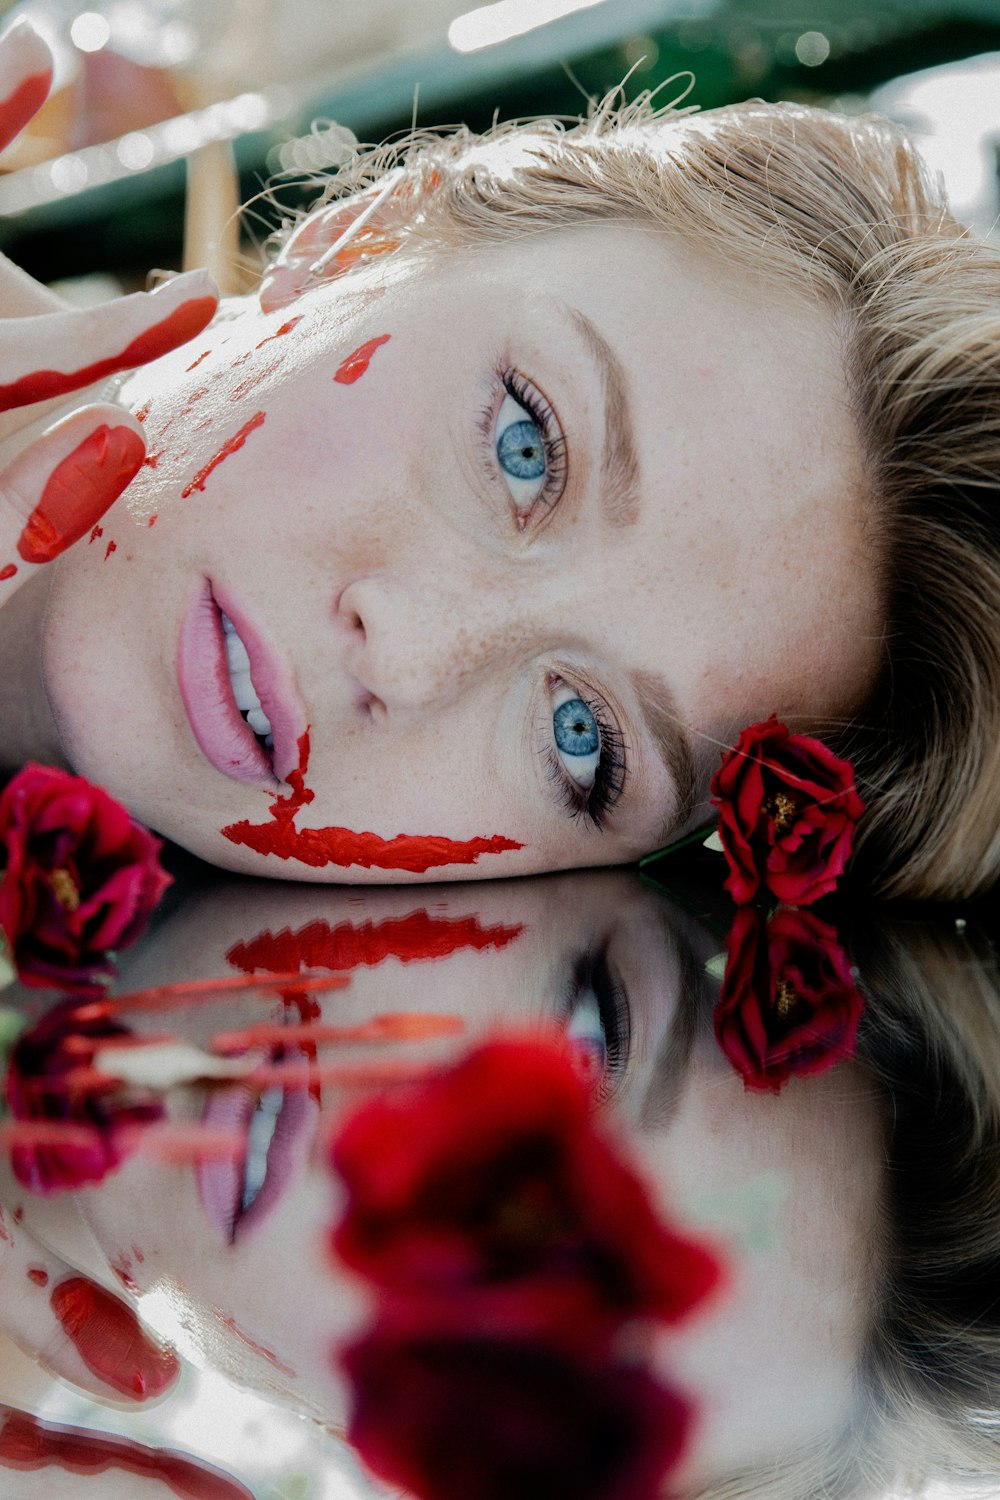 donna con petali di fiori rossi e bianchi sul suo viso